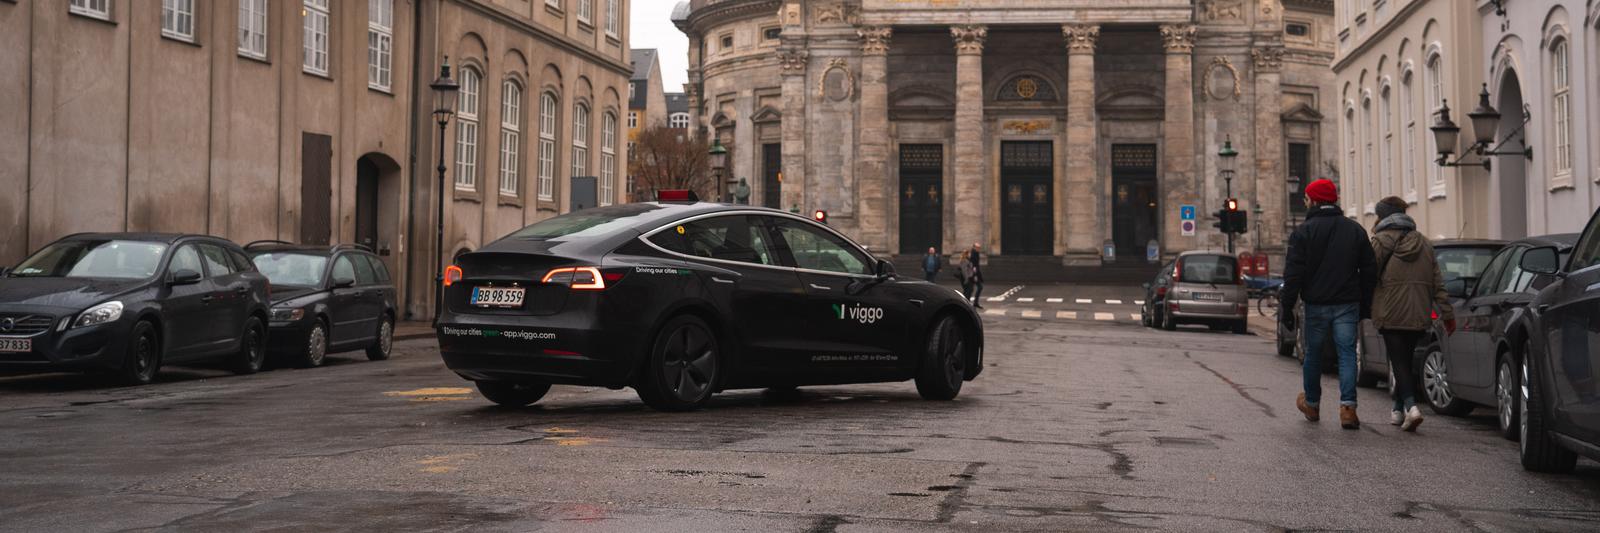 Viggo taxa kører ved Marmorkirken i København